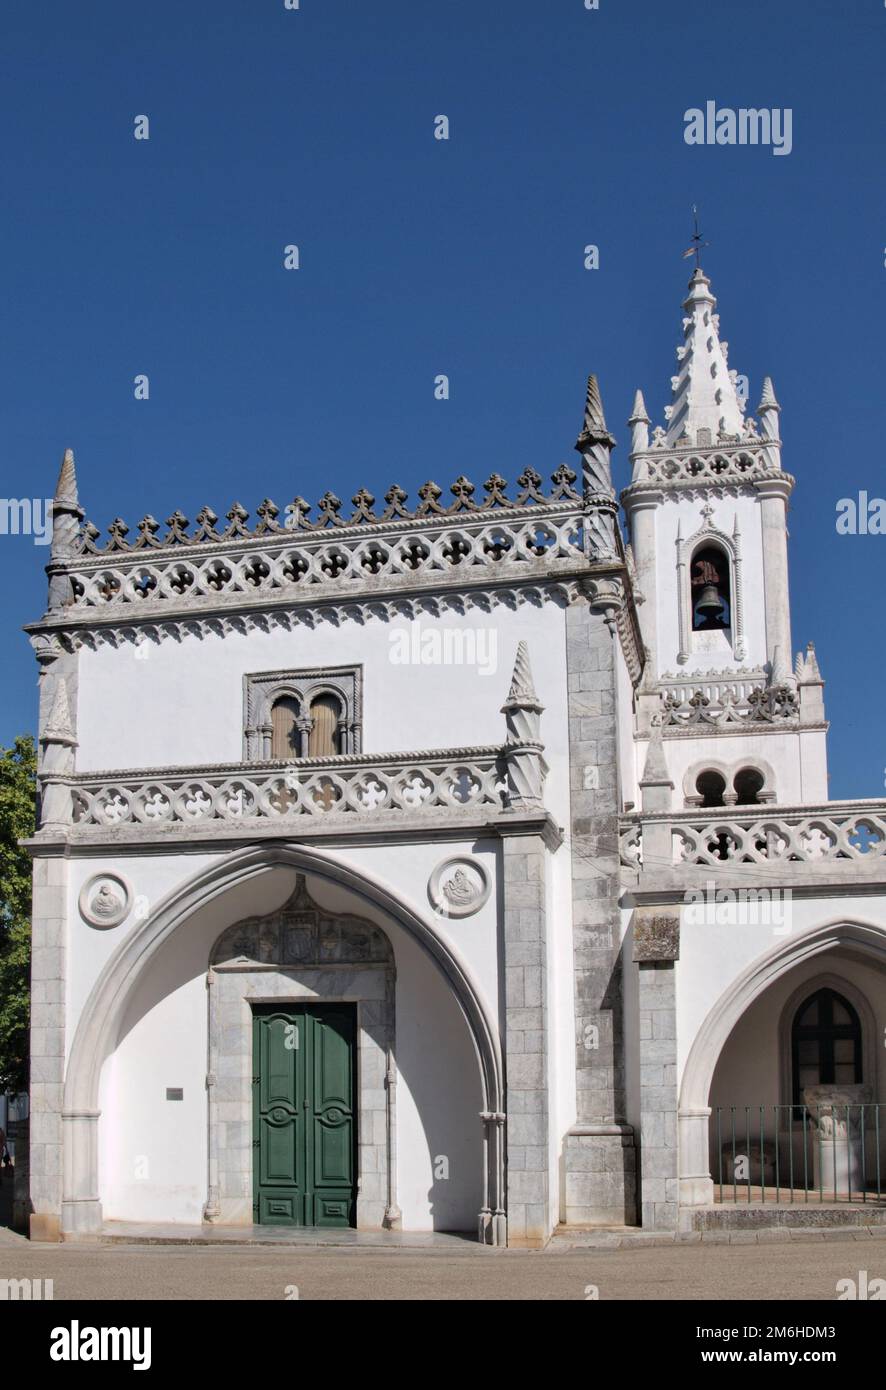 Convento de Nossa Senhora da ConceiÃ§Ã£o, Beja, Alentejo - Portugal Stock Photo